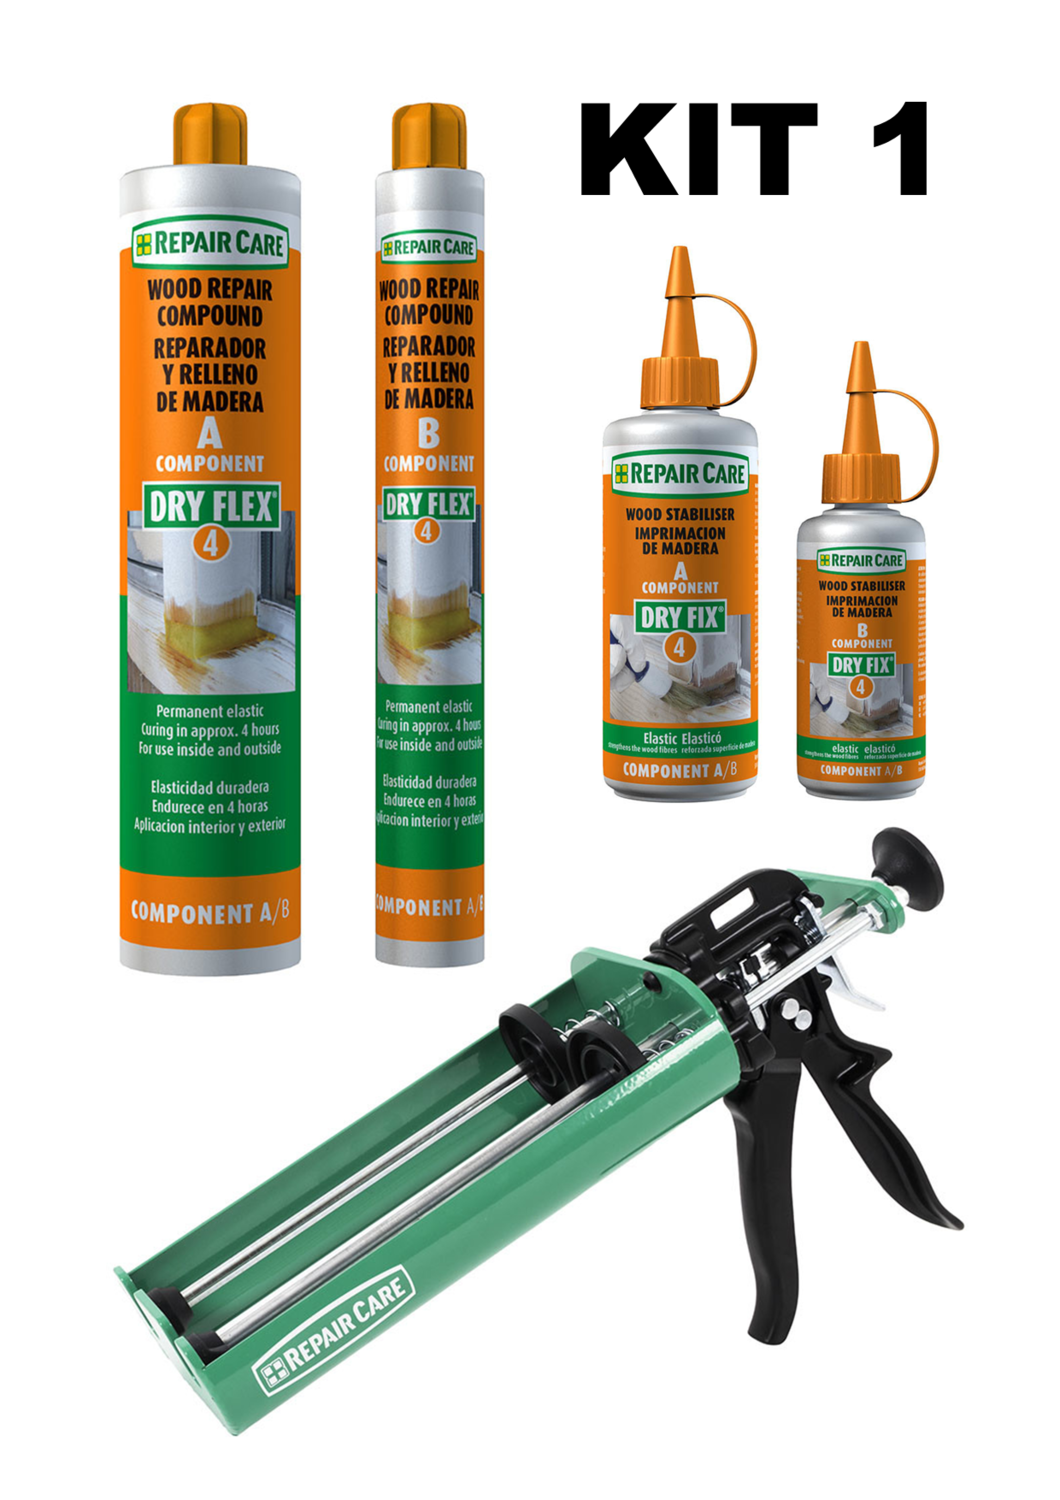 STARTER KIT 1 - Repair Care Dry Flex 4, Dry Fix Uni and Metal Dosing Gun Kit